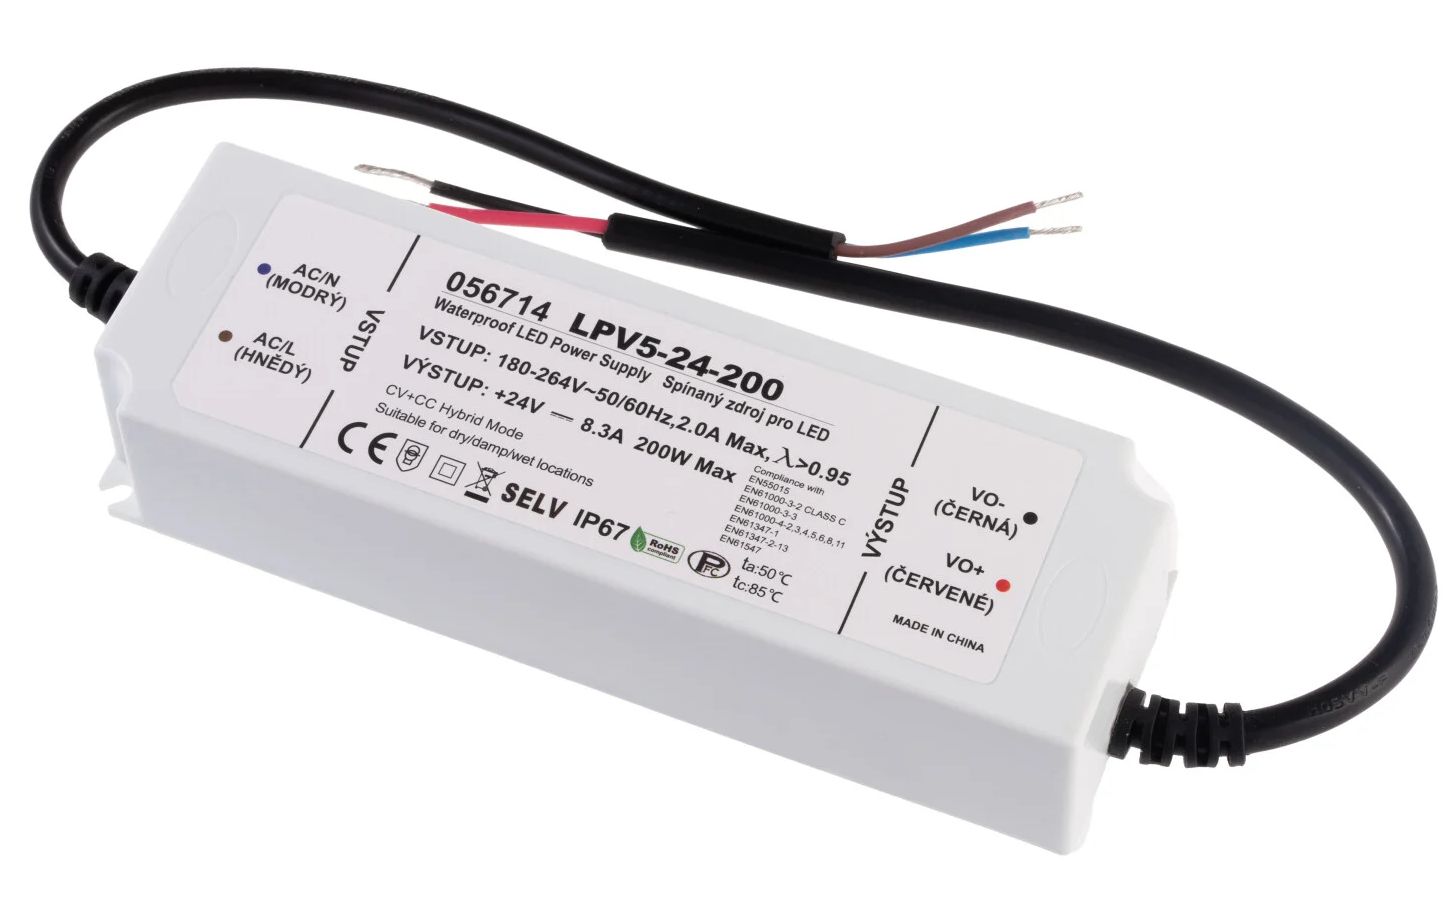 T-LED LED zdroj (trafo) hybrid CV+CC 24V 200W IP67 056714